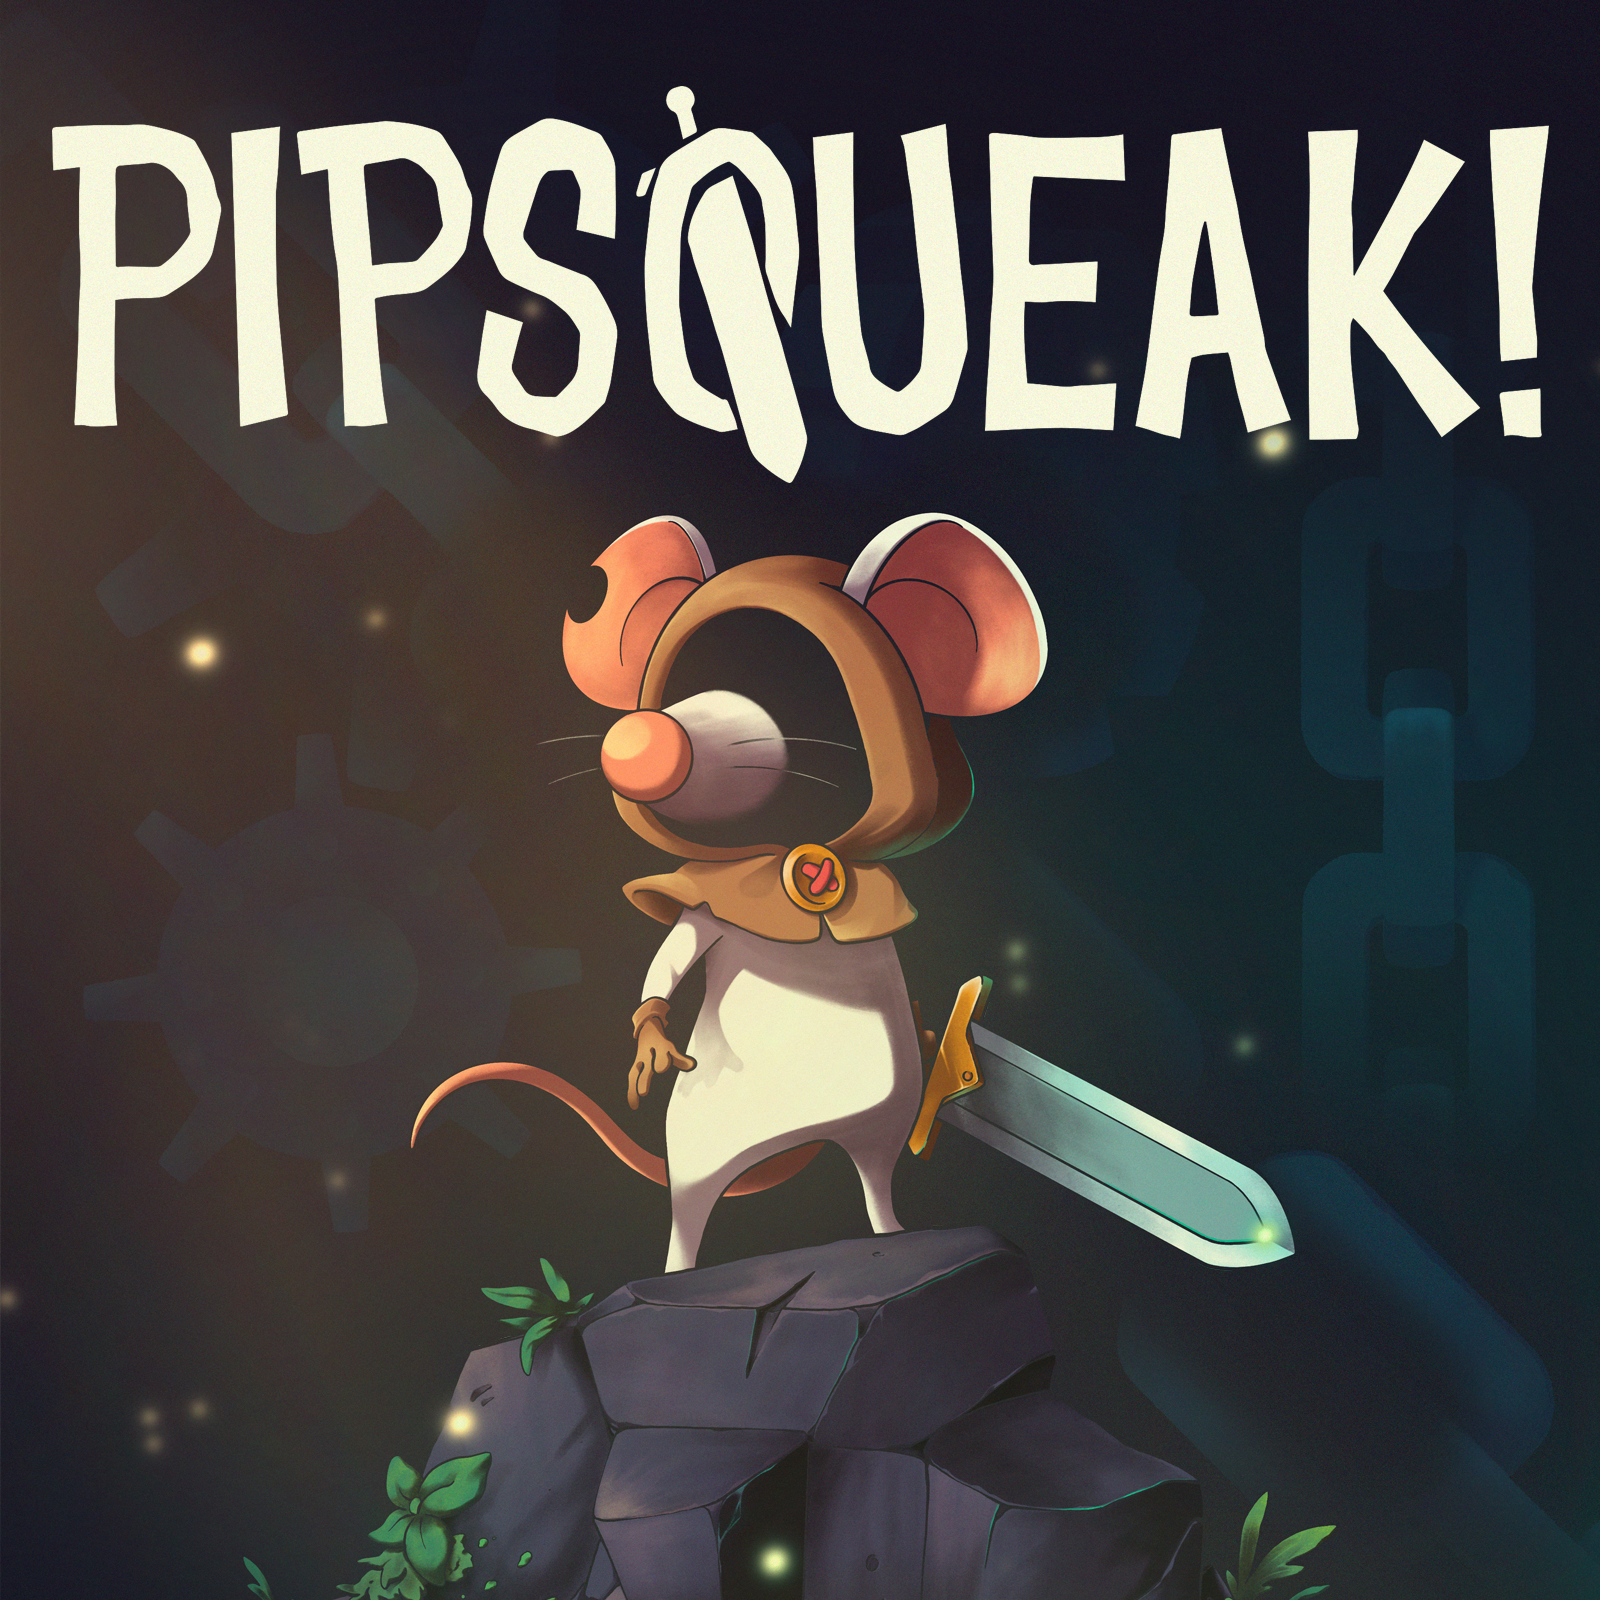 Pipsqueak! Kickstarter going now!